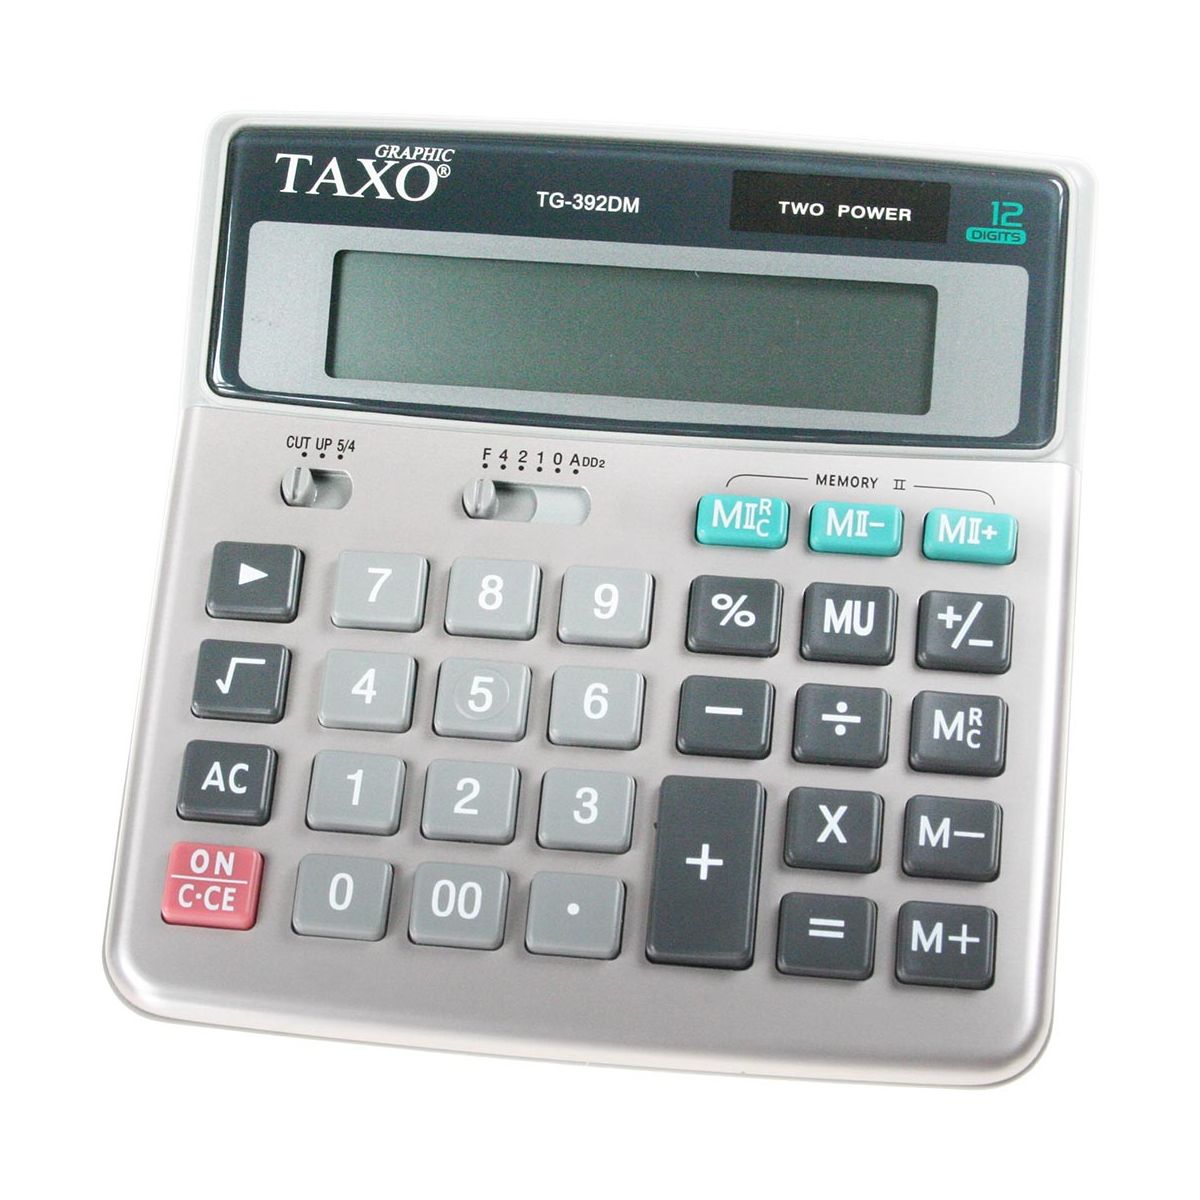 Kalkulator na biurko TG-392DM Taxo Graphic 12-pozycyjny